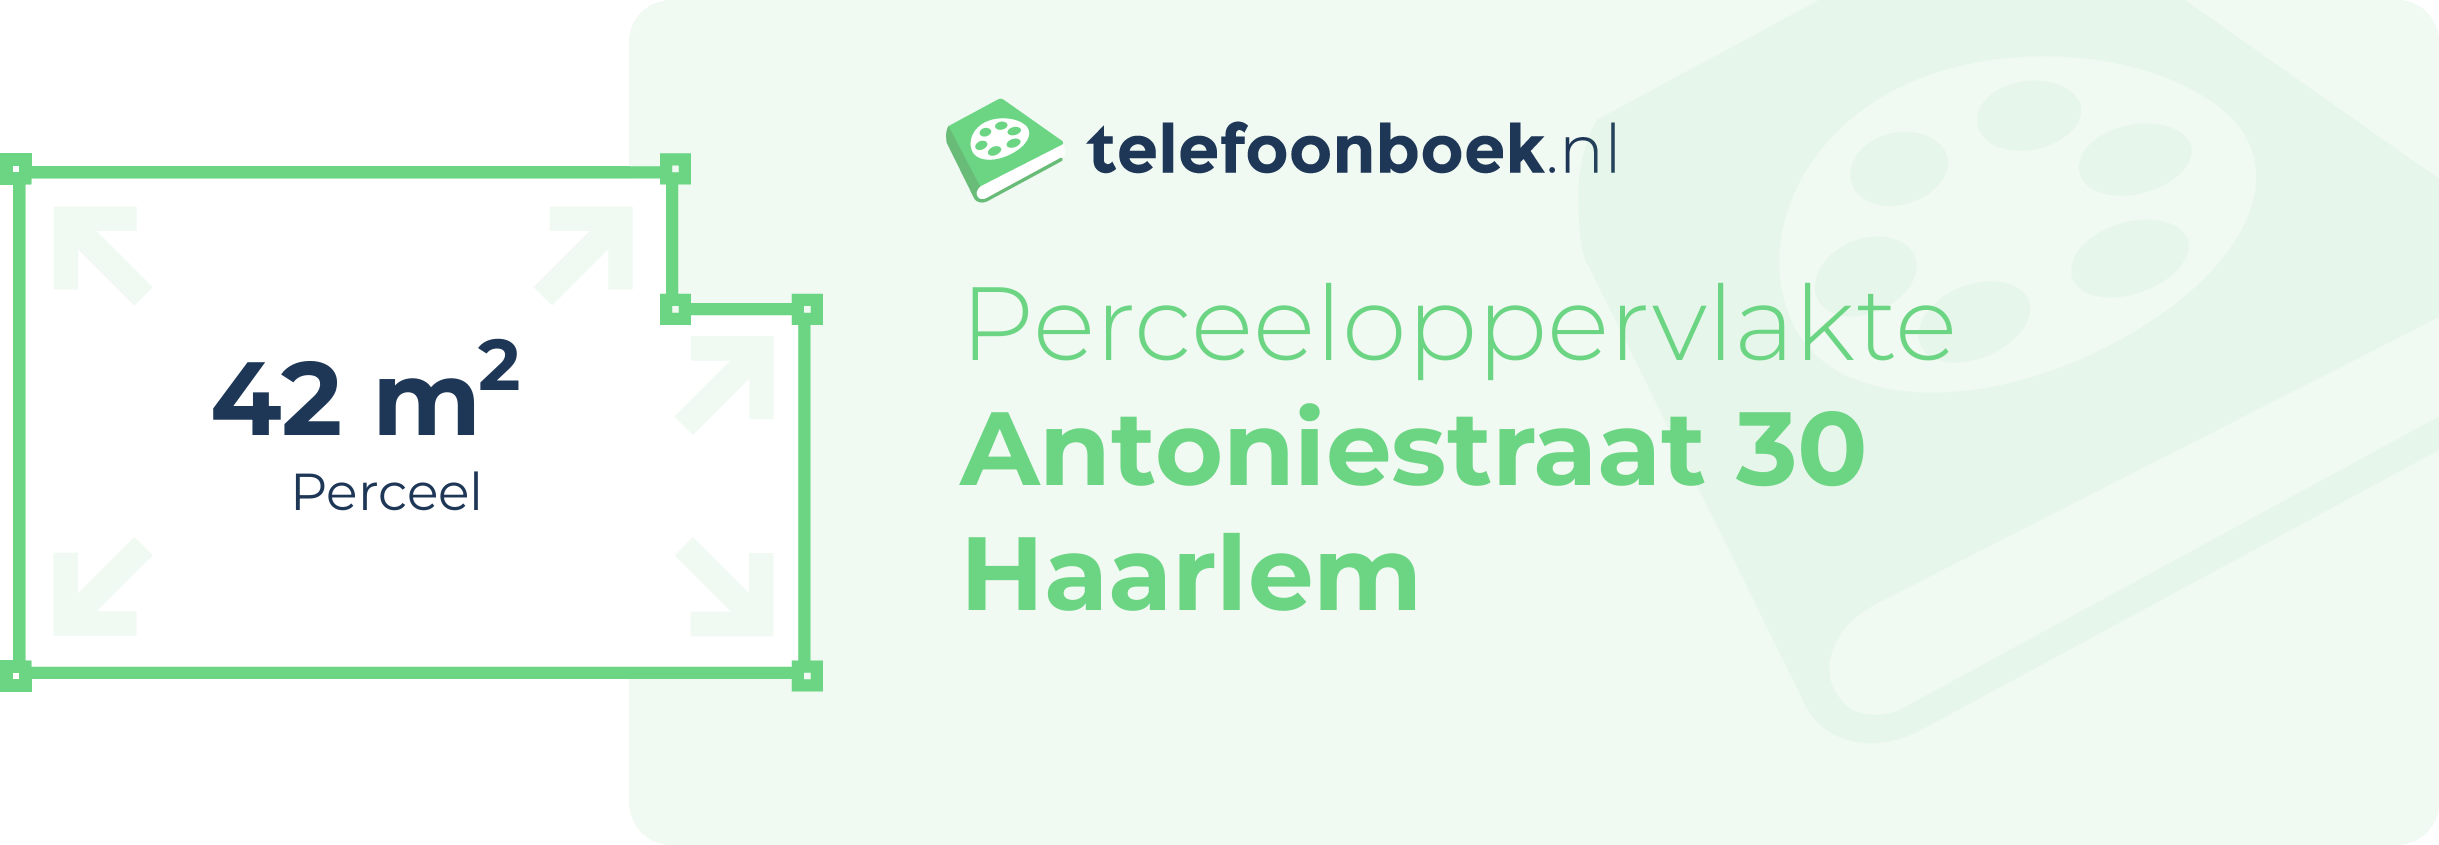 Perceeloppervlakte Antoniestraat 30 Haarlem